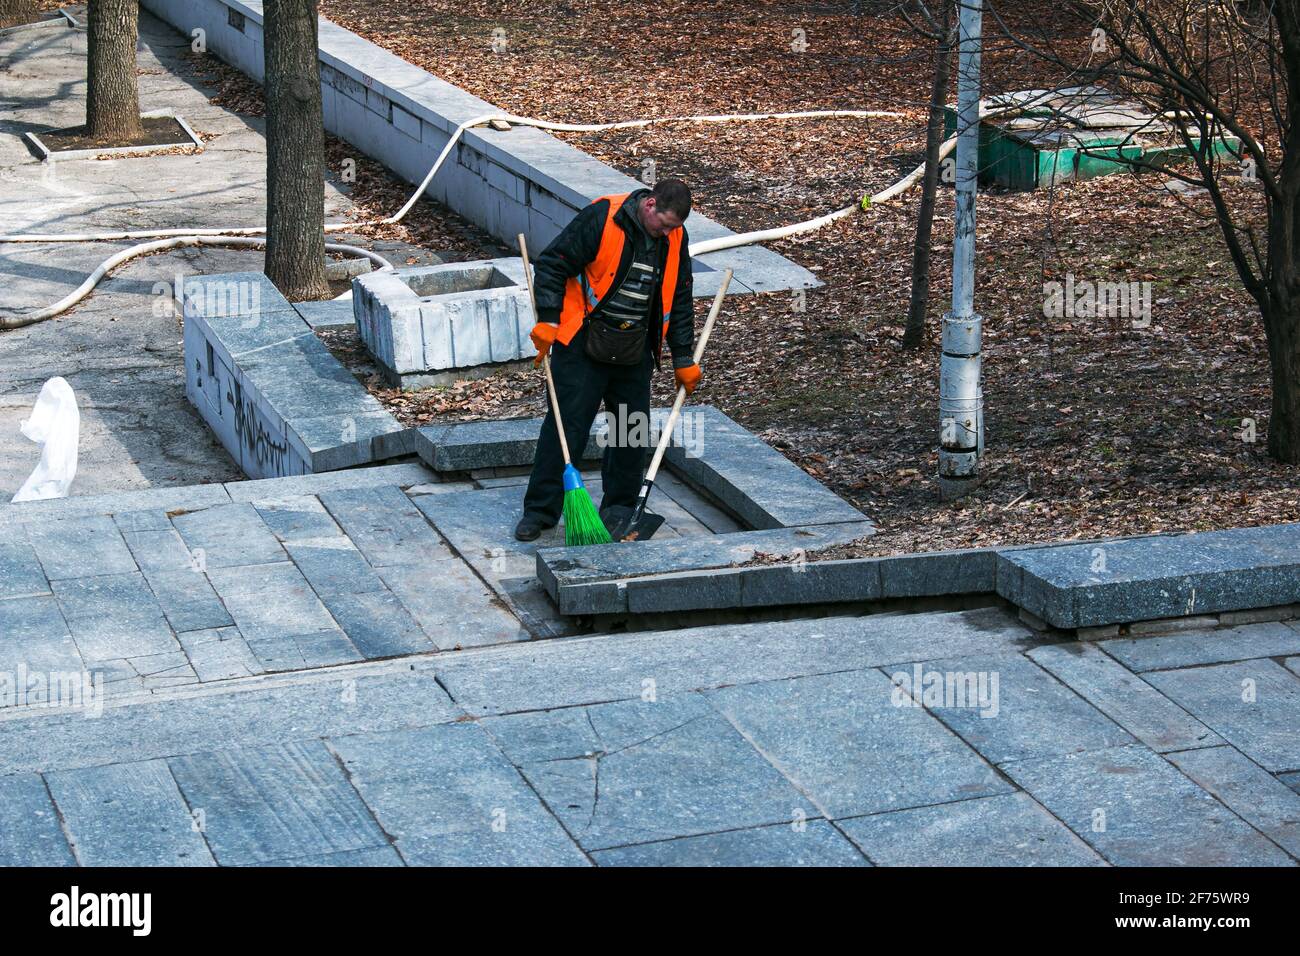 Dnepropetrovsk, Ucraina - 03.16.2021: I servizi municipali stanno pulendo la città dopo l'inverno. Un lavoratore spazza una scala di granito in un parco da ultimo y Foto Stock